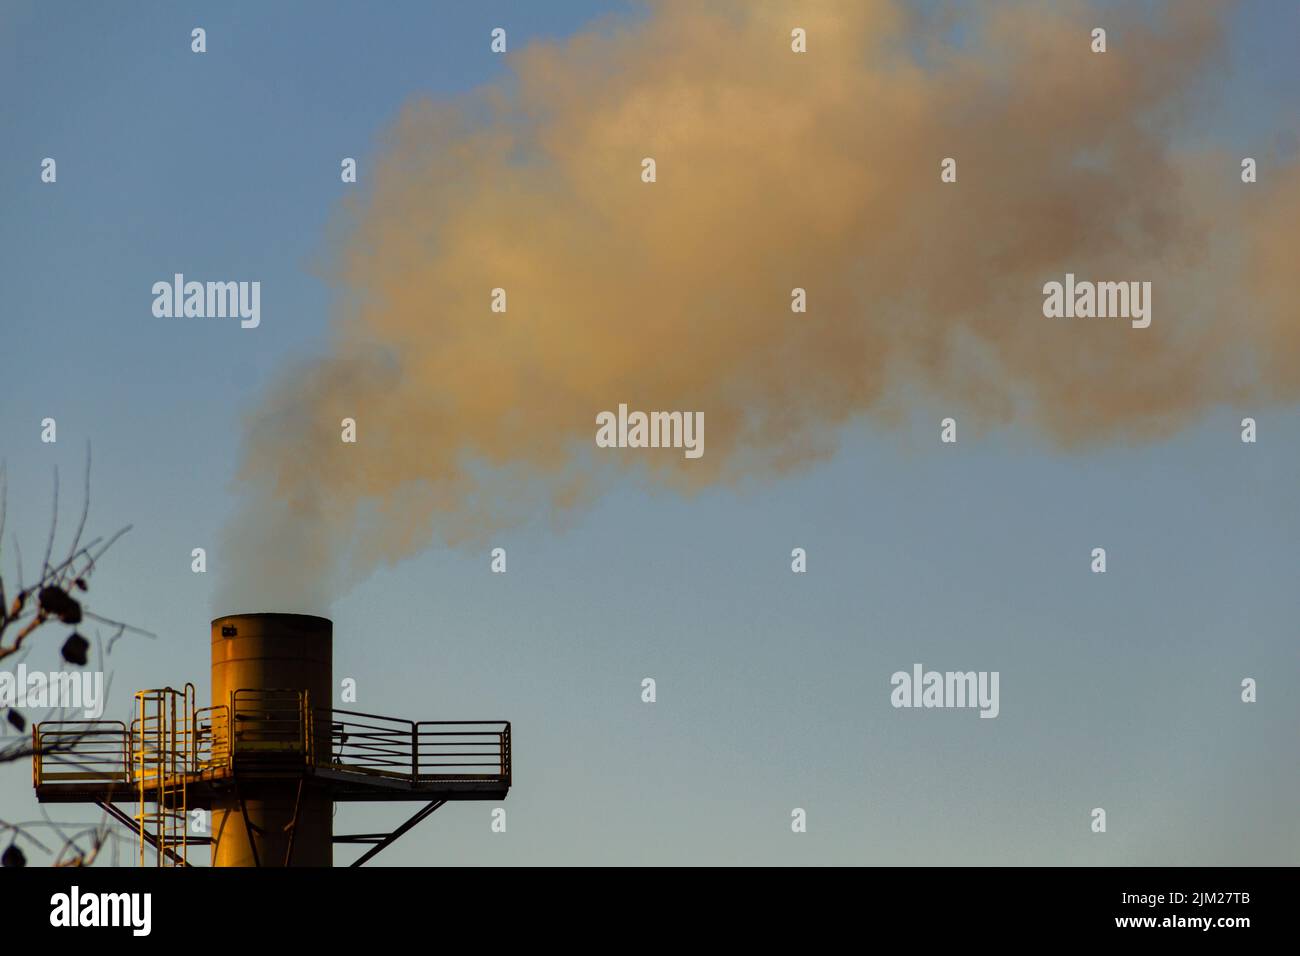 Goiania, Goiás, Brésil – 04 août 2022: Fumée sortant d'une cheminée d'usine. Pollution de fumée d'usine avec le ciel en arrière-plan. Banque D'Images